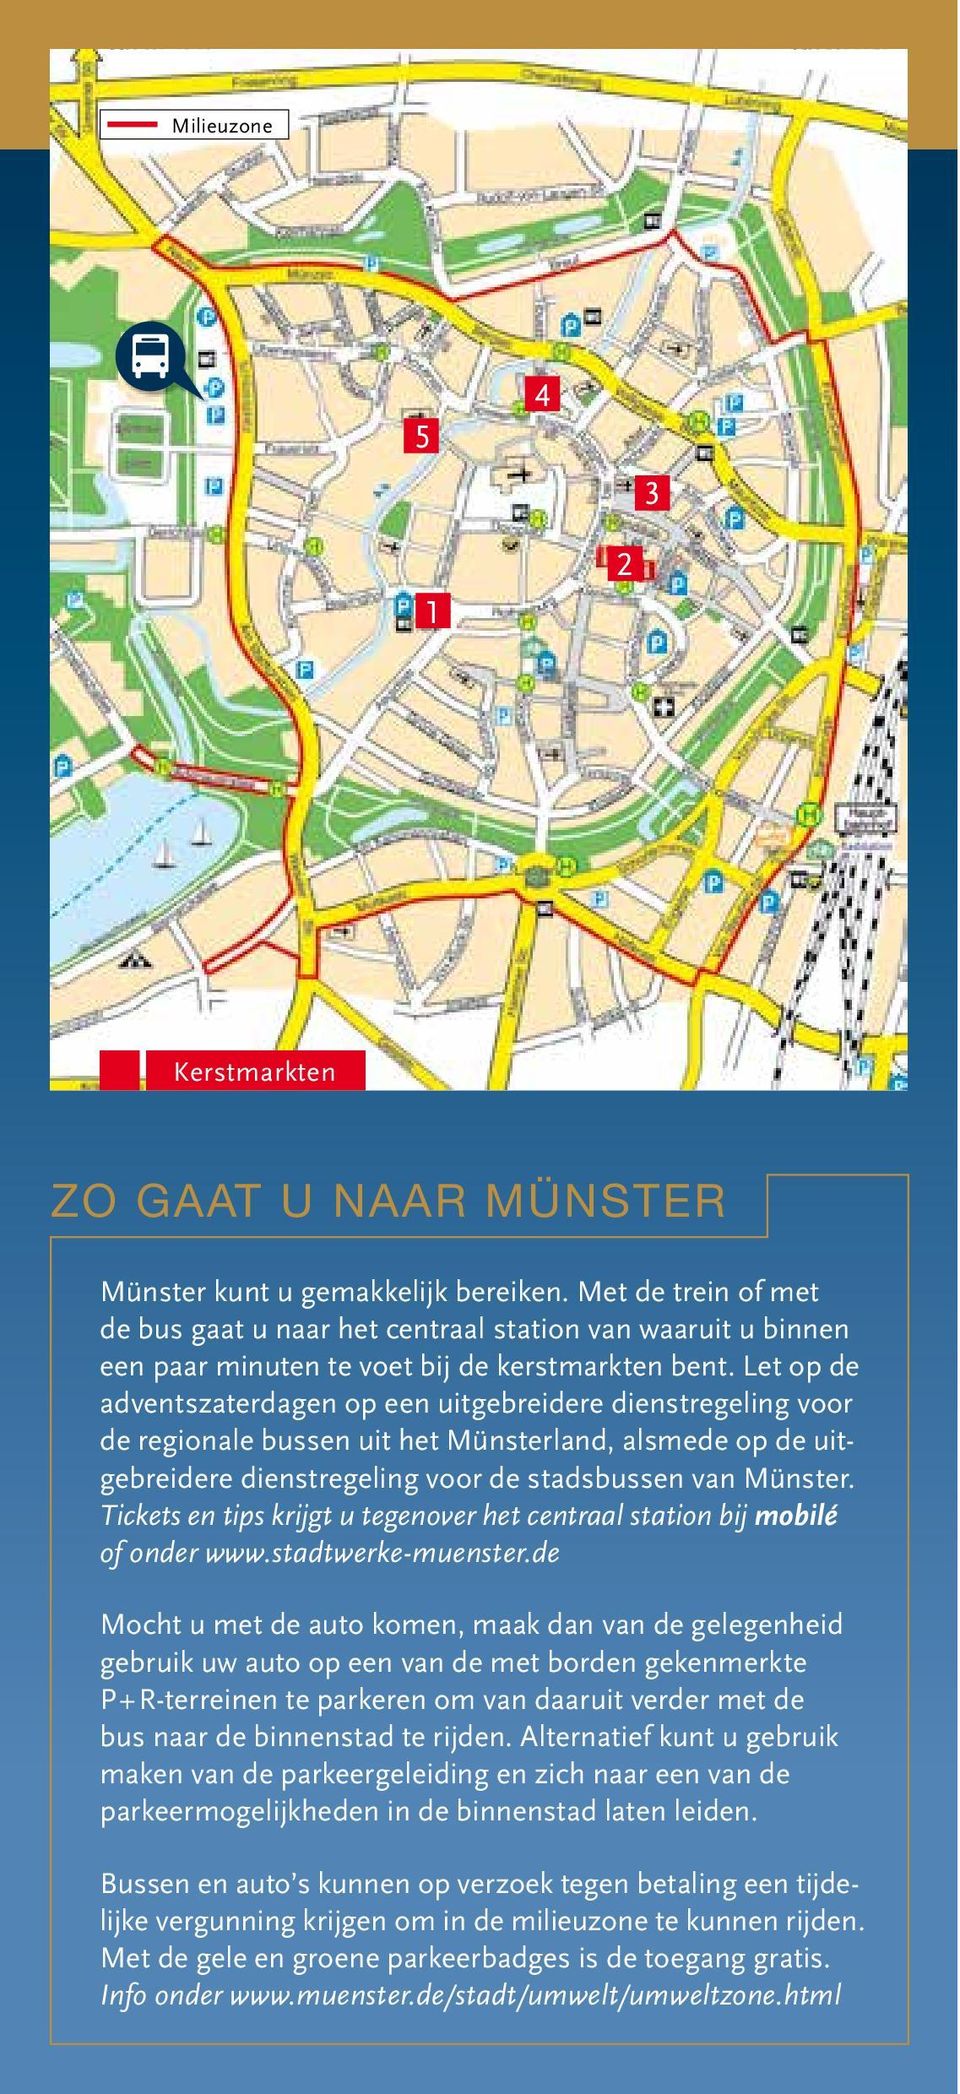 Let op de adventszaterdagen op een uitgebreidere dienstregeling voor de regionale bussen uit het Münsterland, alsmede op de uitgebreidere dienstregeling voor de stadsbussen van Münster.